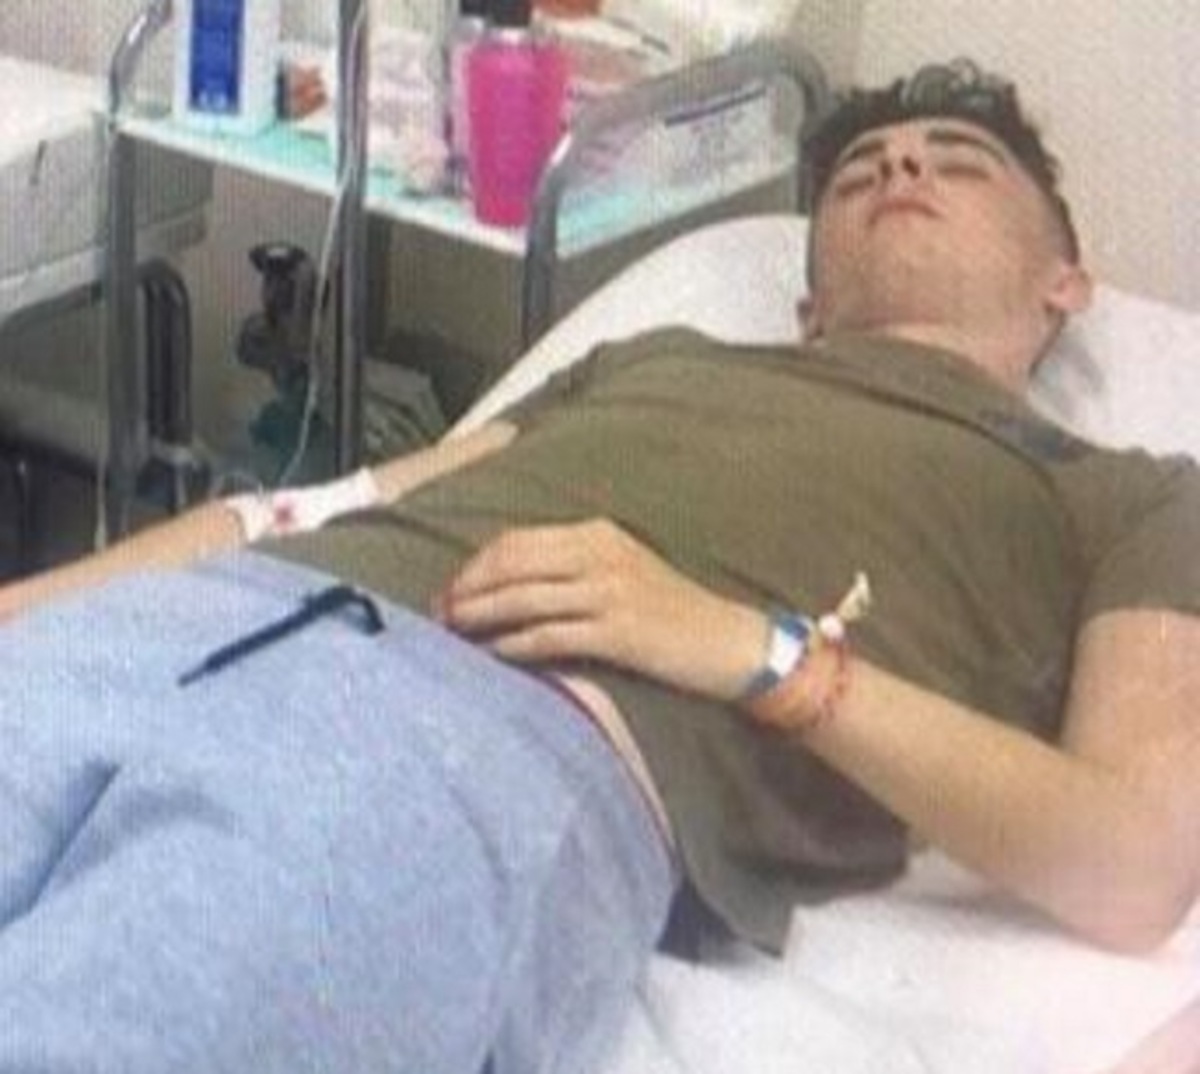 Ζάκυνθος: Σάλος από τη δηλητηρίαση 17 ατόμων – “Ο εμετός μας ήταν μαύρος” – Οι γιατροί ειδοποίησαν την αστυνομία [pics]